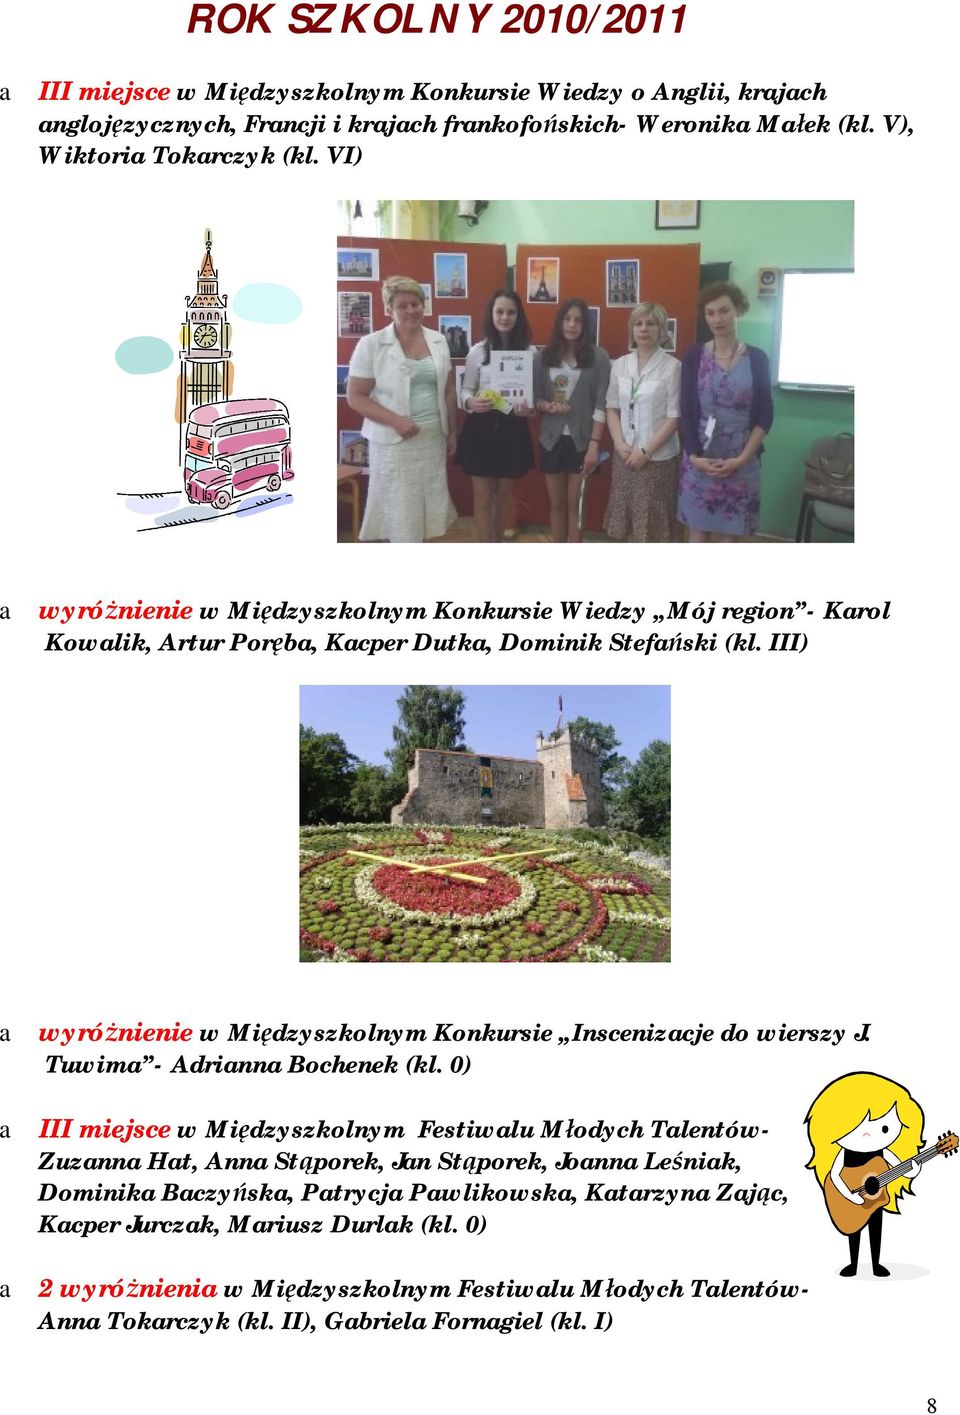 III) a wyróżnienie w Międzyszkolnym Konkursie Inscenizacje do wierszy J. Tuwima - Adrianna Bochenek (kl.